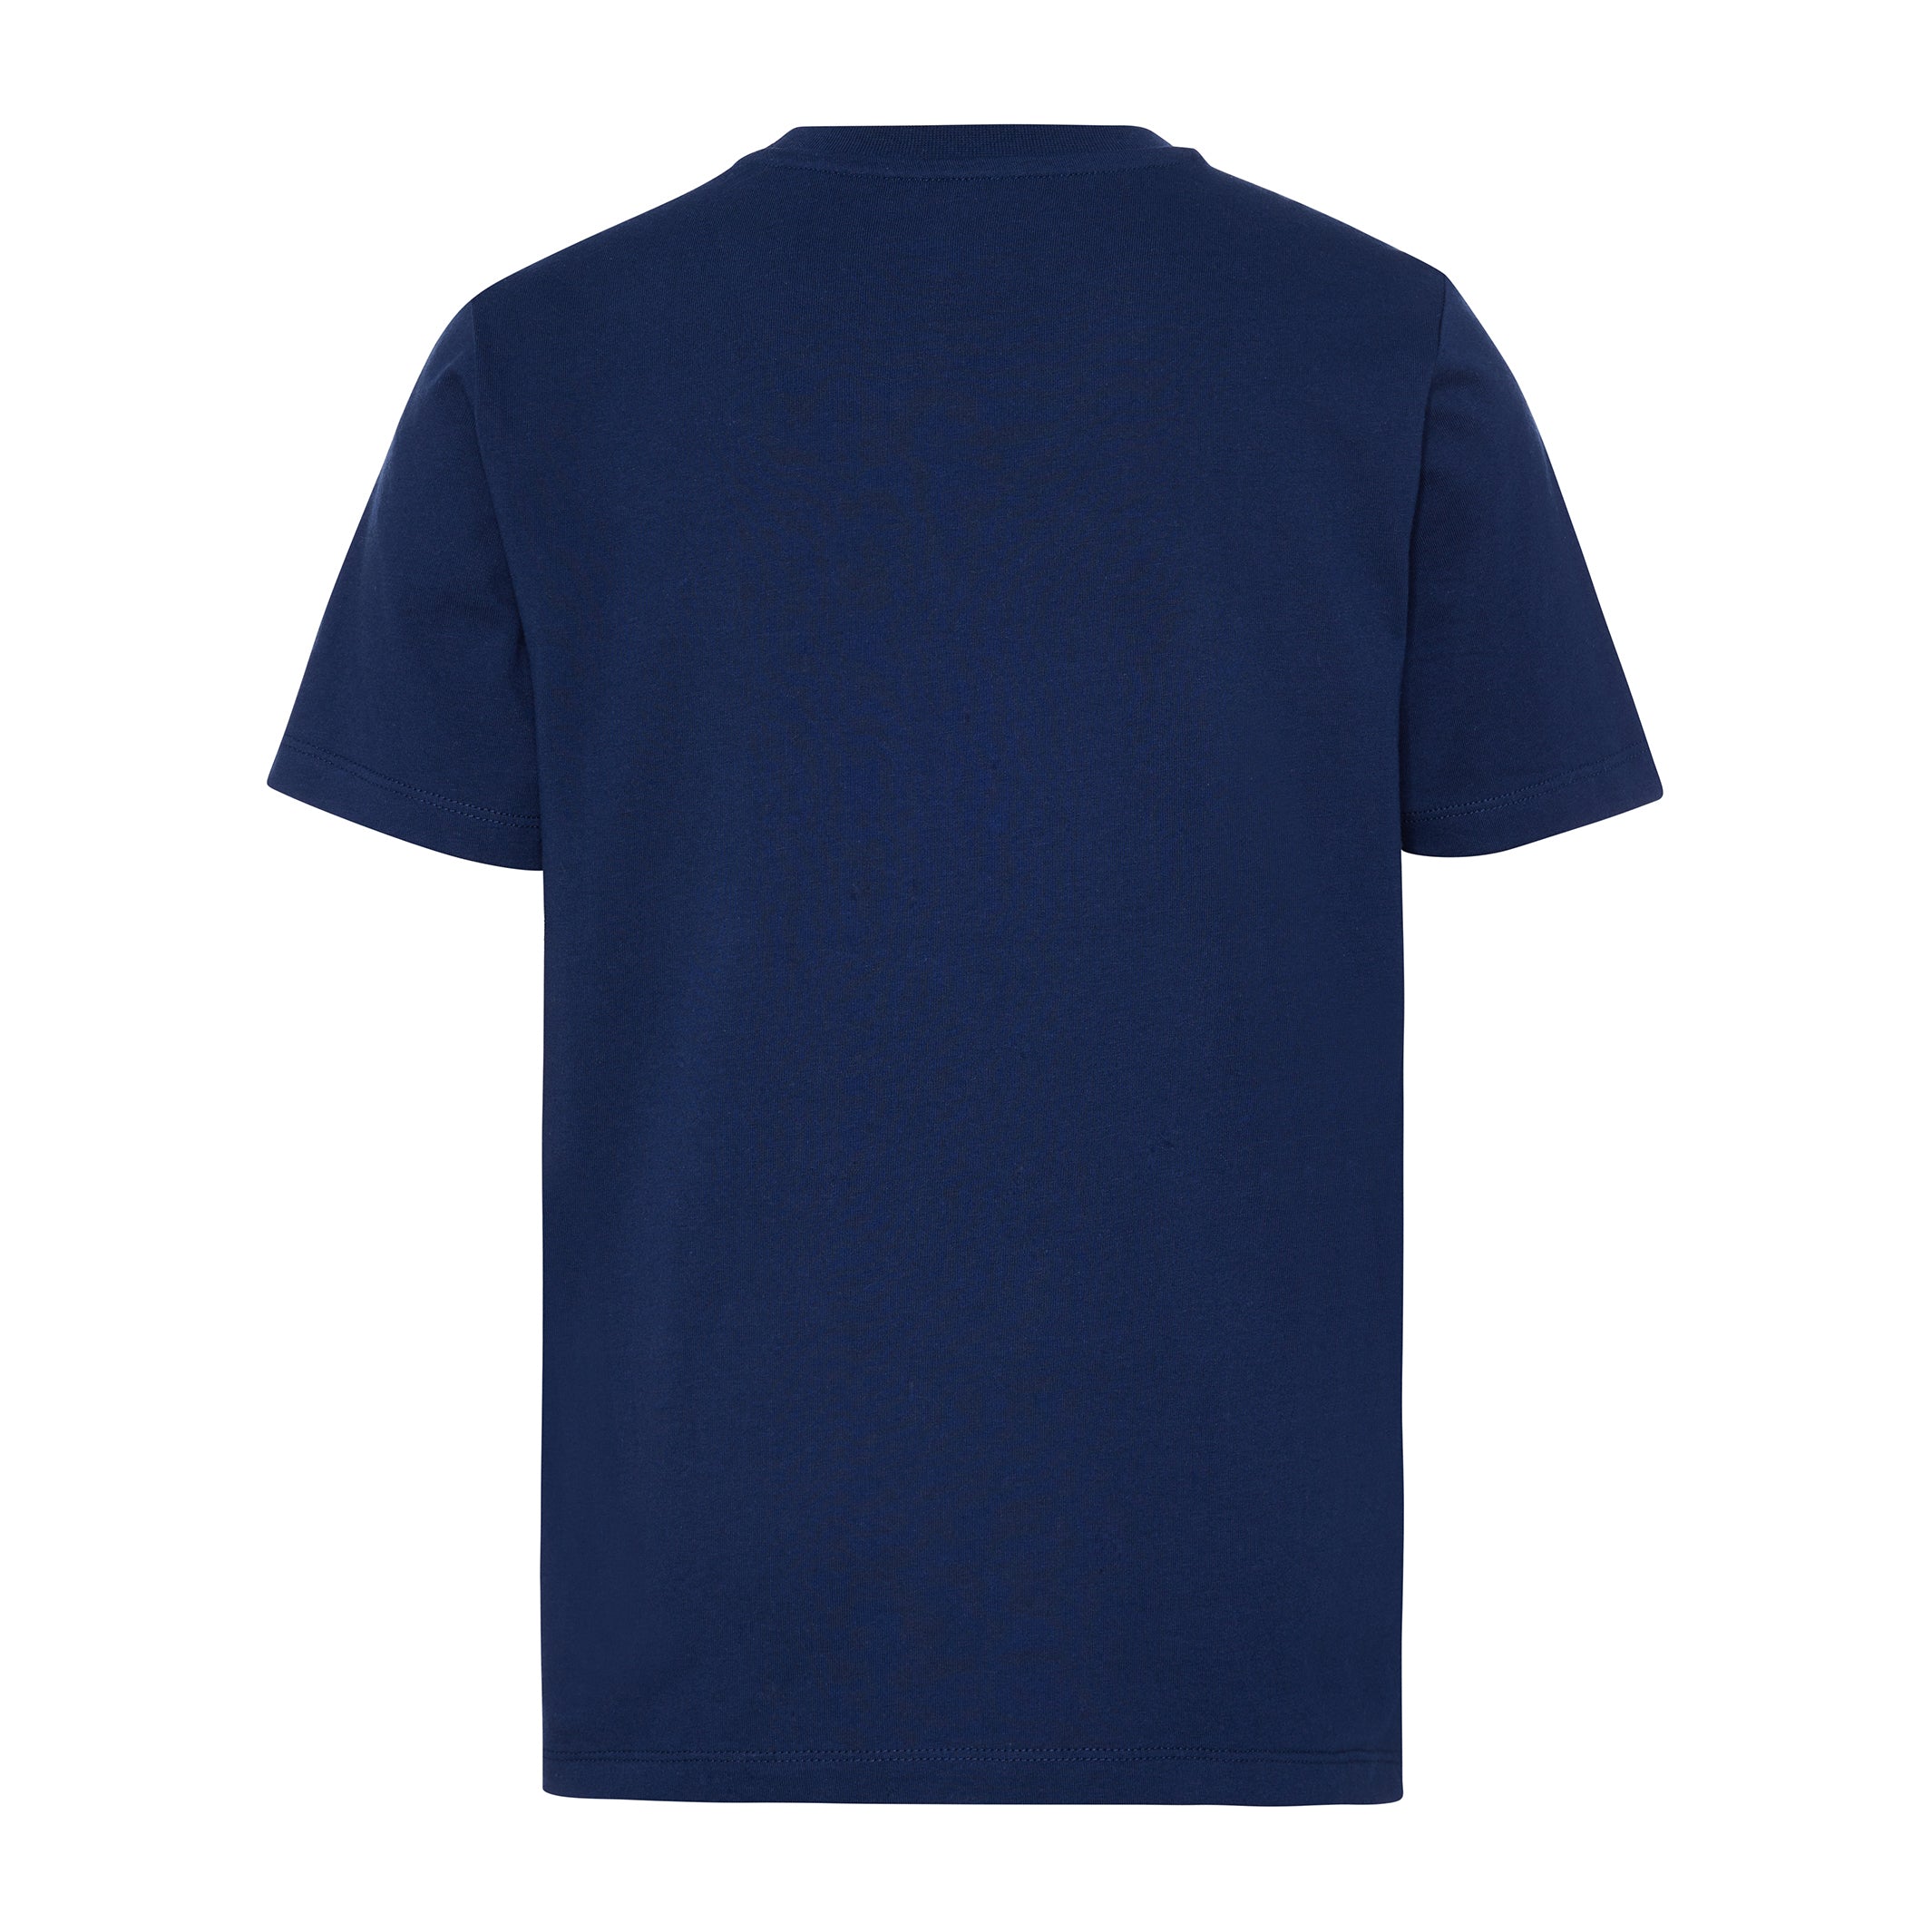 Boy's Navy T-Shirt Tennis Ball Logo Back View